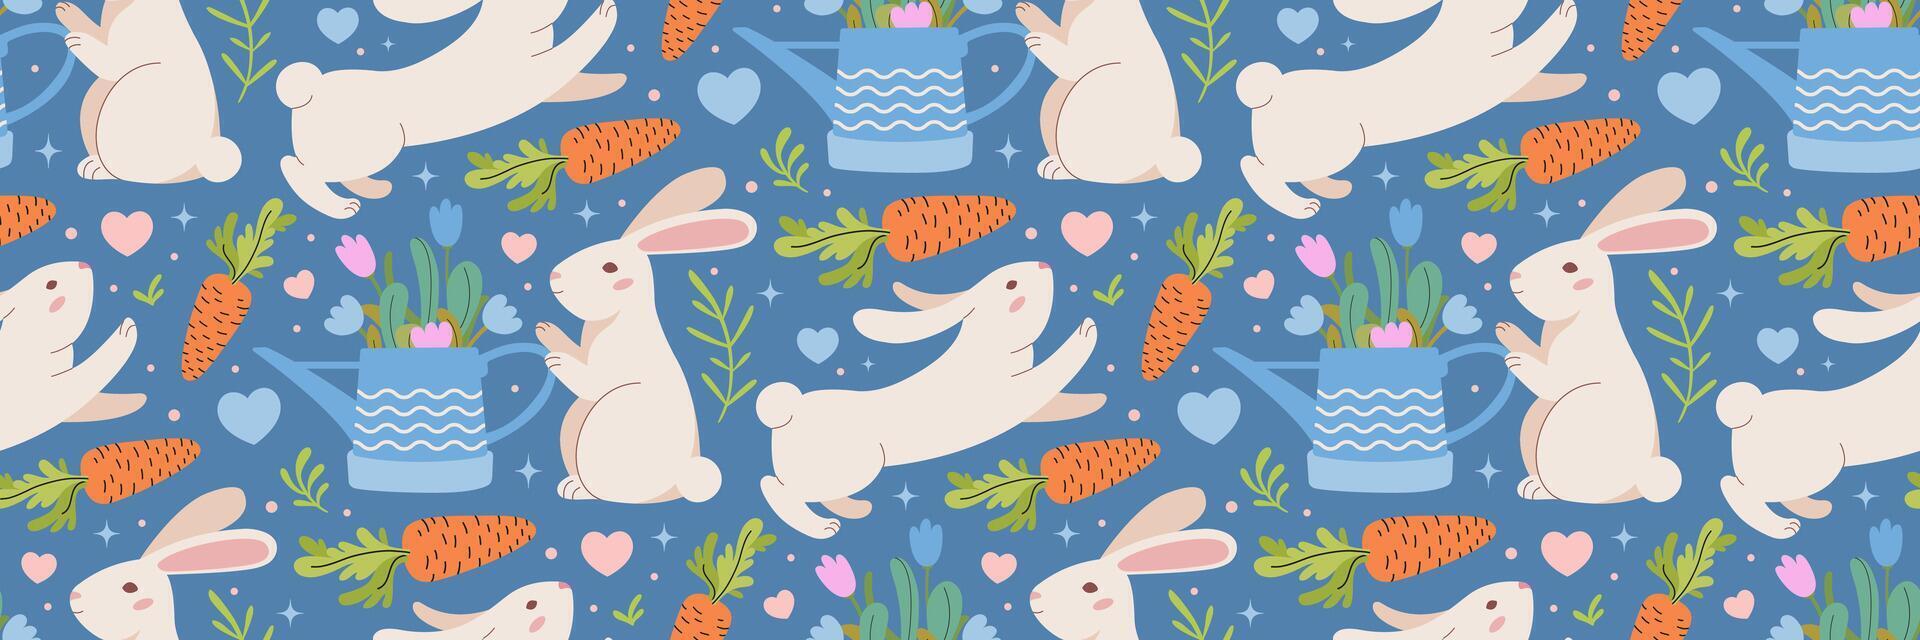 påsk kanin, morot och trädgård vattning kan mönster. blå bakgrund med kaniner, vegetation. traditionell festlig bakgrund. för hälsning kort, baner, textilier, tapet. vektor illustration